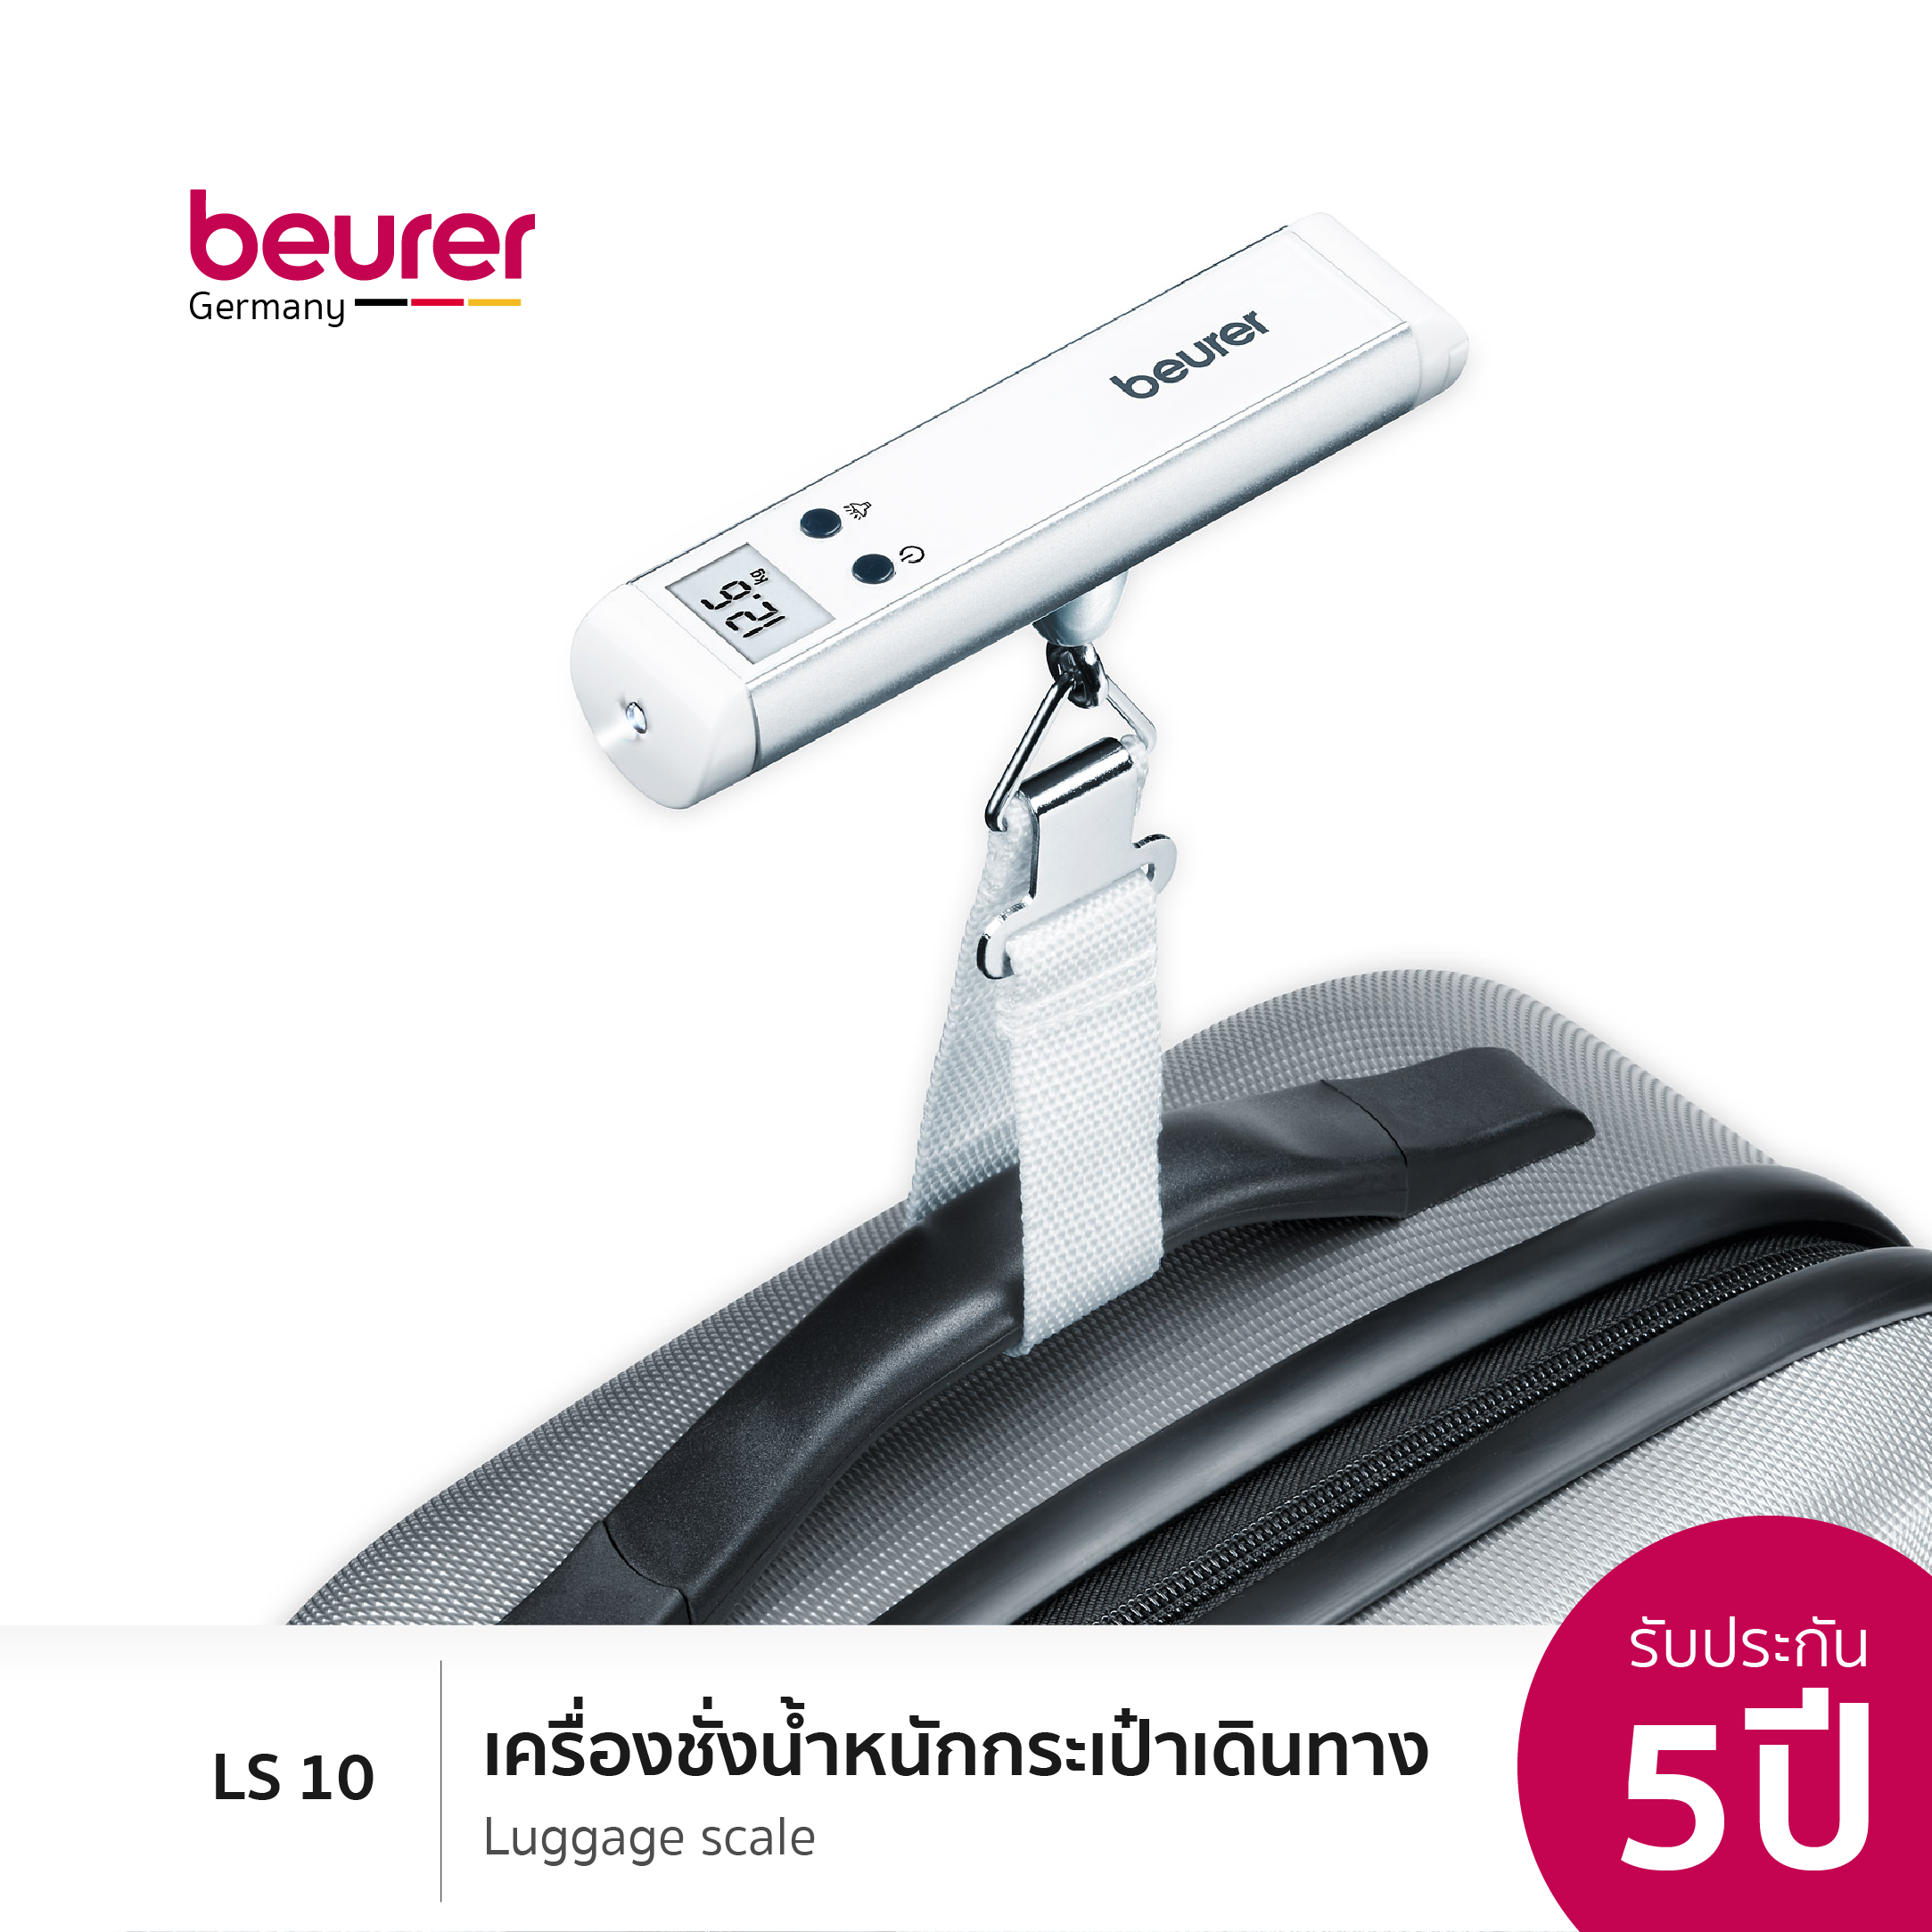 [รับประกัน 5 ปี] Beurer LS 10 Luggage Scale l บอยเลอร์ เครื่องชั่งกระเป๋าเดินทาง รุ่น แอลเอส 10